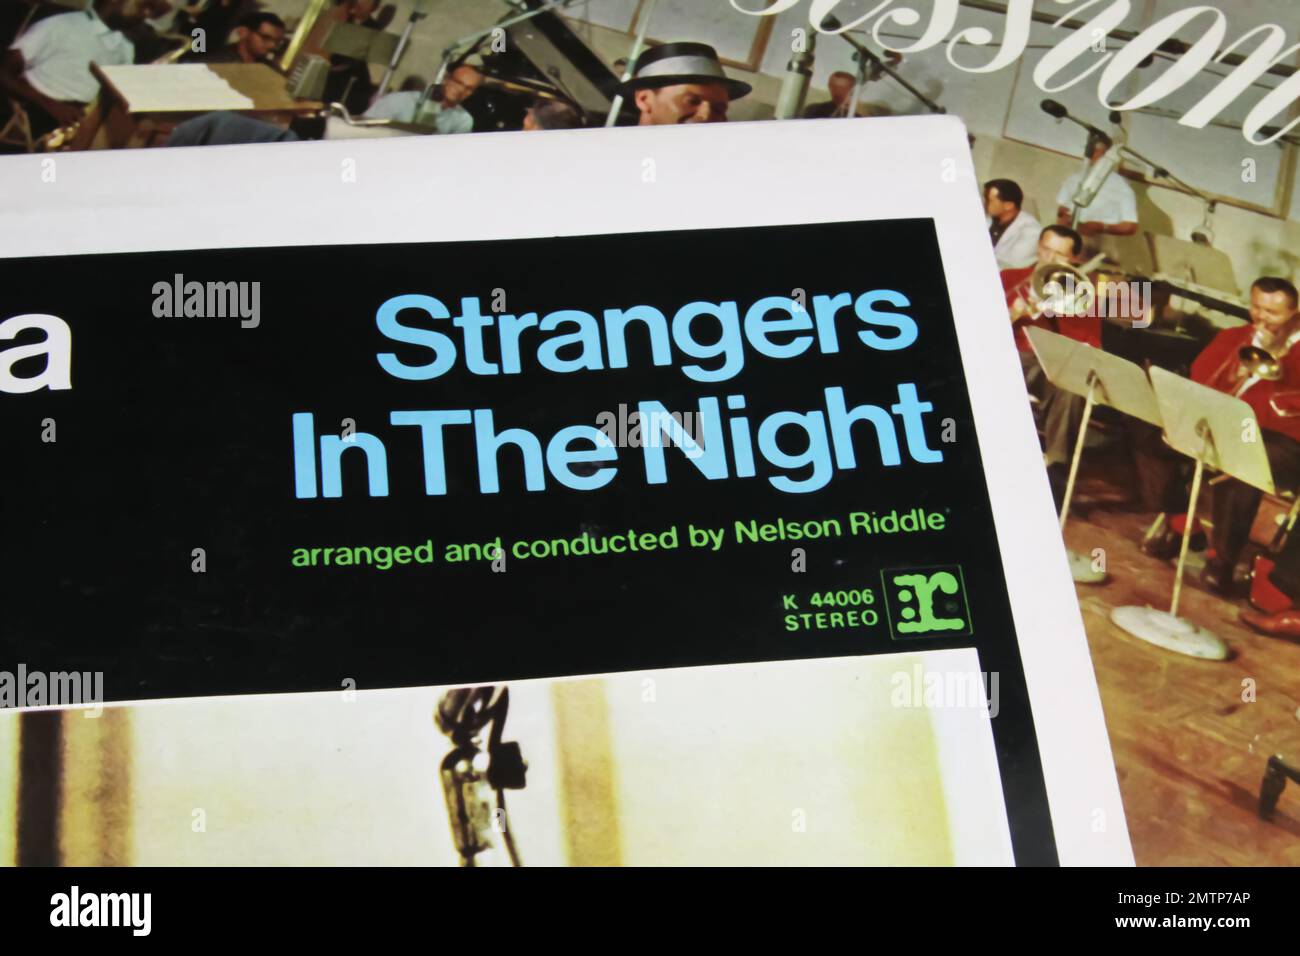 Viersen, Alemania - 8. Junio 2022: Primer plano del álbum de vinilo Strangers in the night de Frank Sinatra, lanzado en 1966 Foto de stock